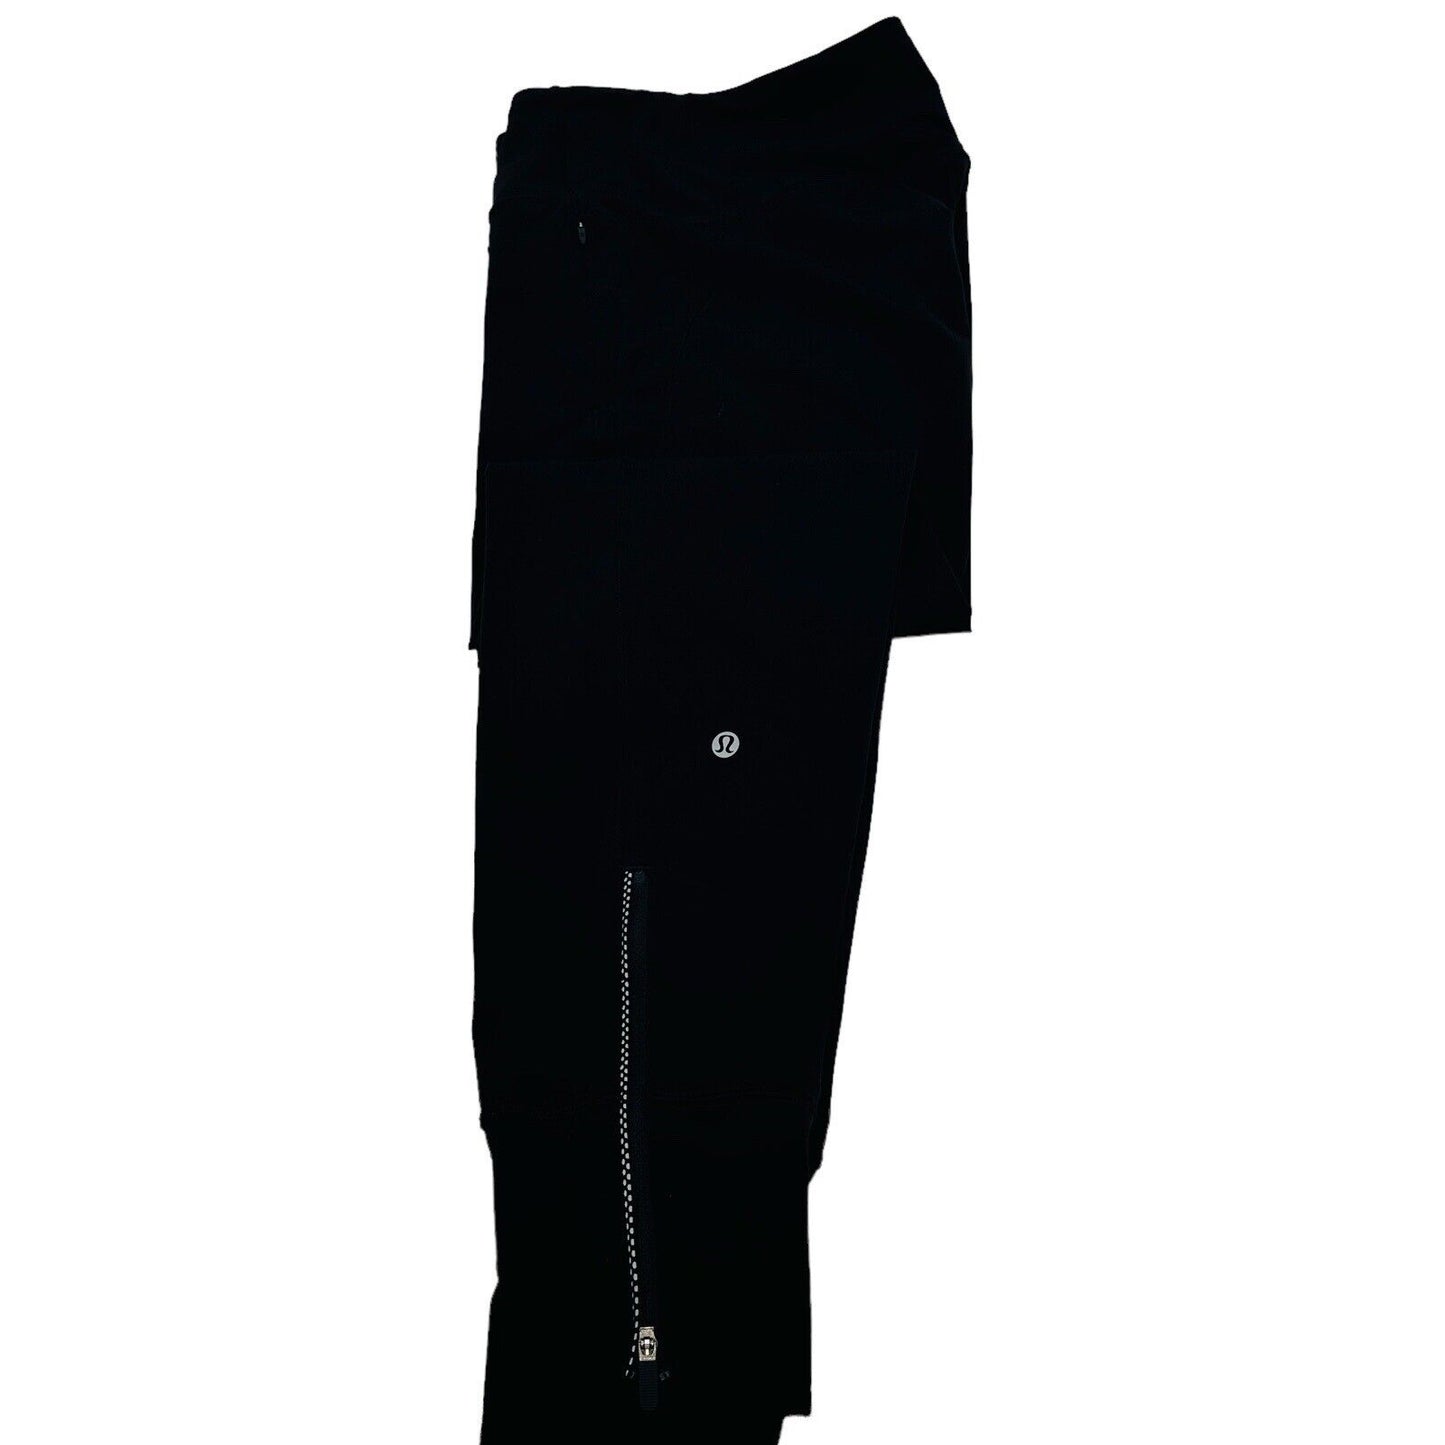 Lululemon Fresh Tracks Pant Black Size 4 Zippered Legs Reflective w/ Pockets